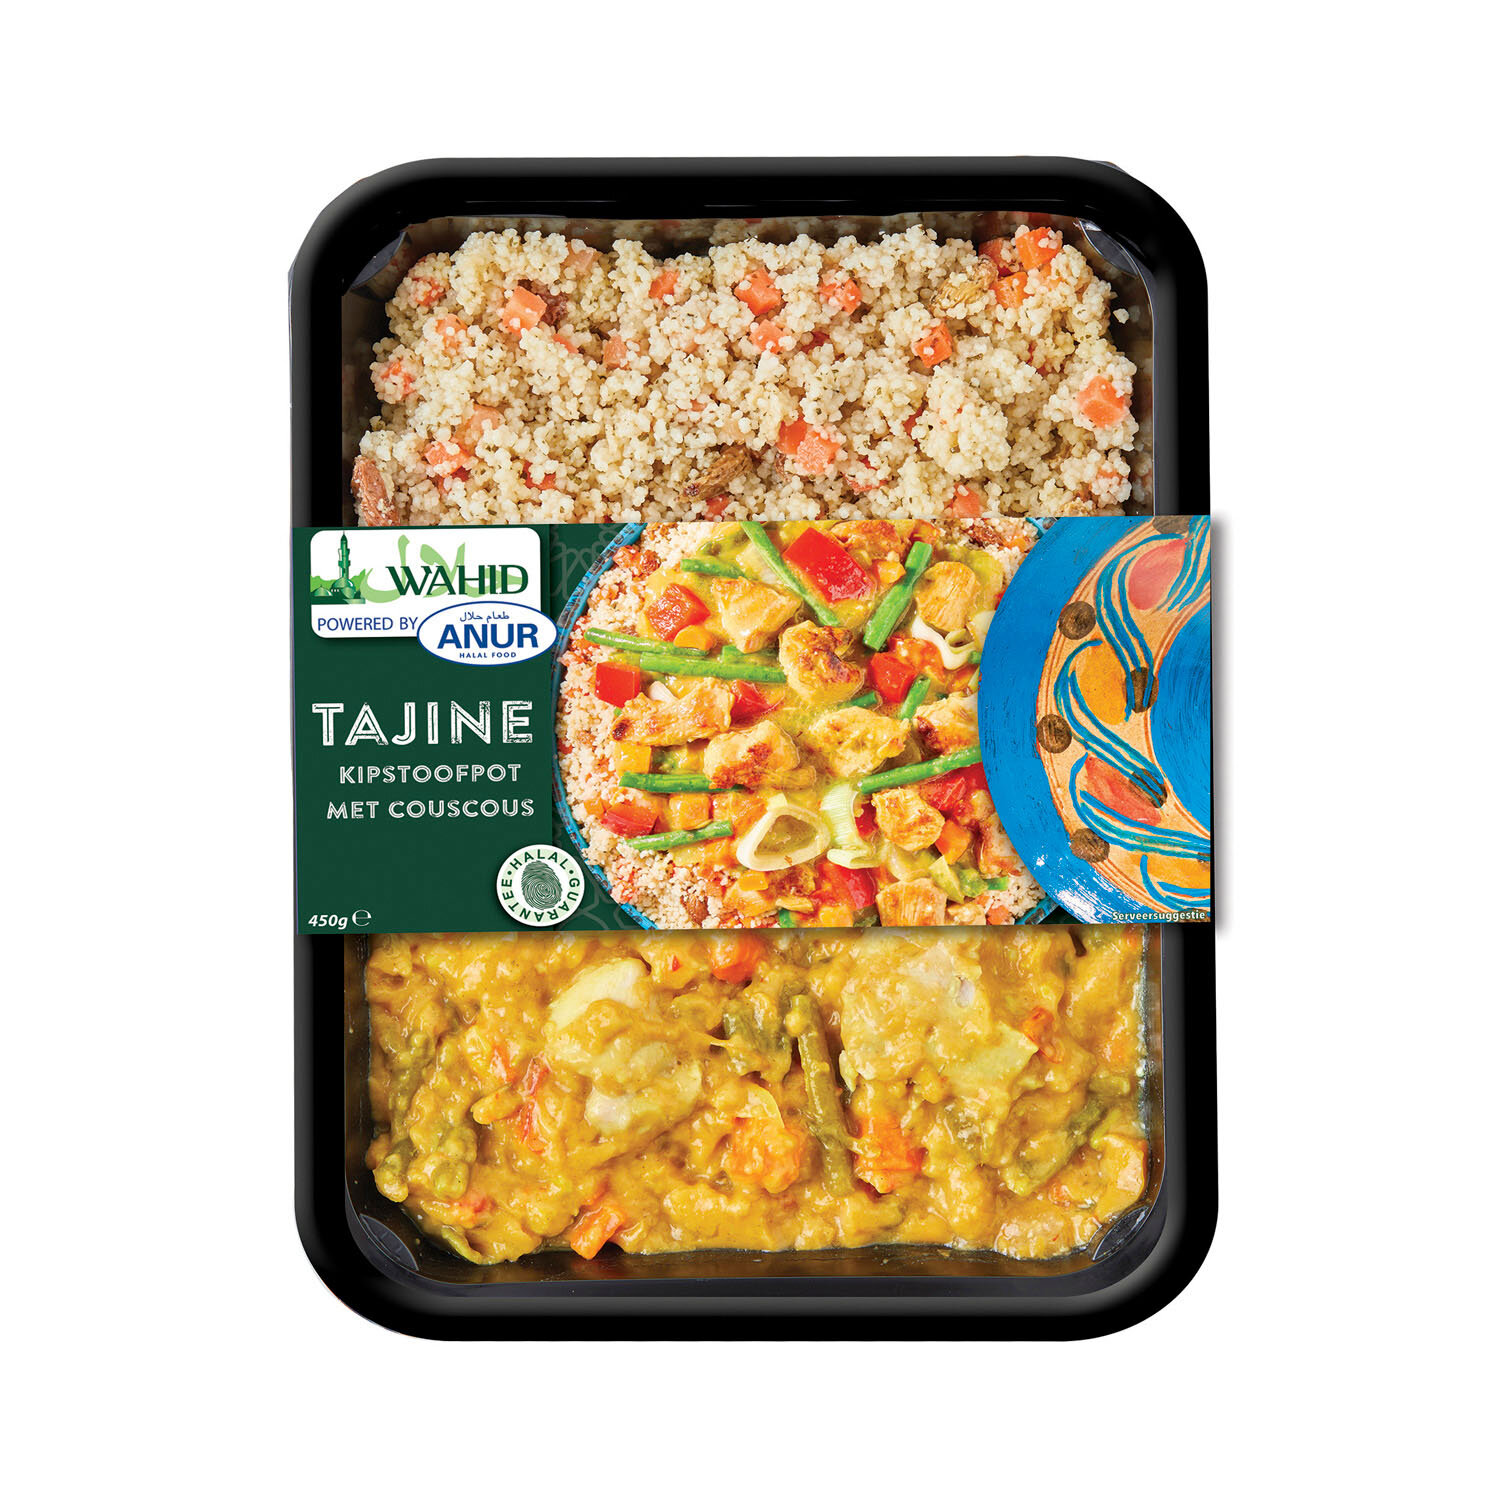 Tajine - Kipstoofpot met couscous - Wahid (Copy) (Copy)